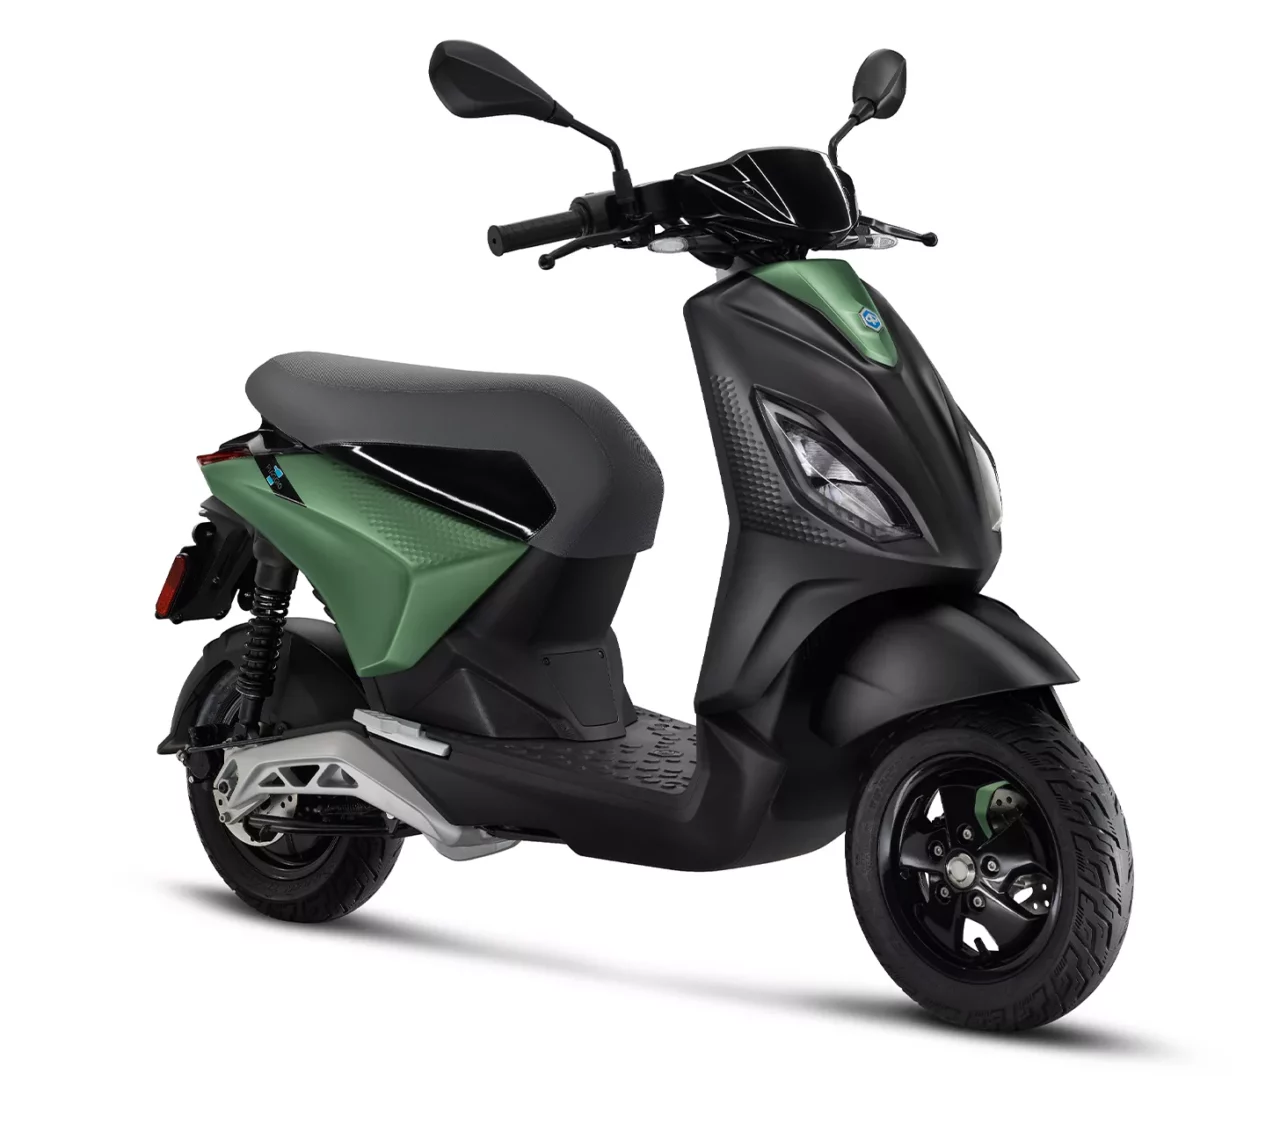 Piaggio One scooter